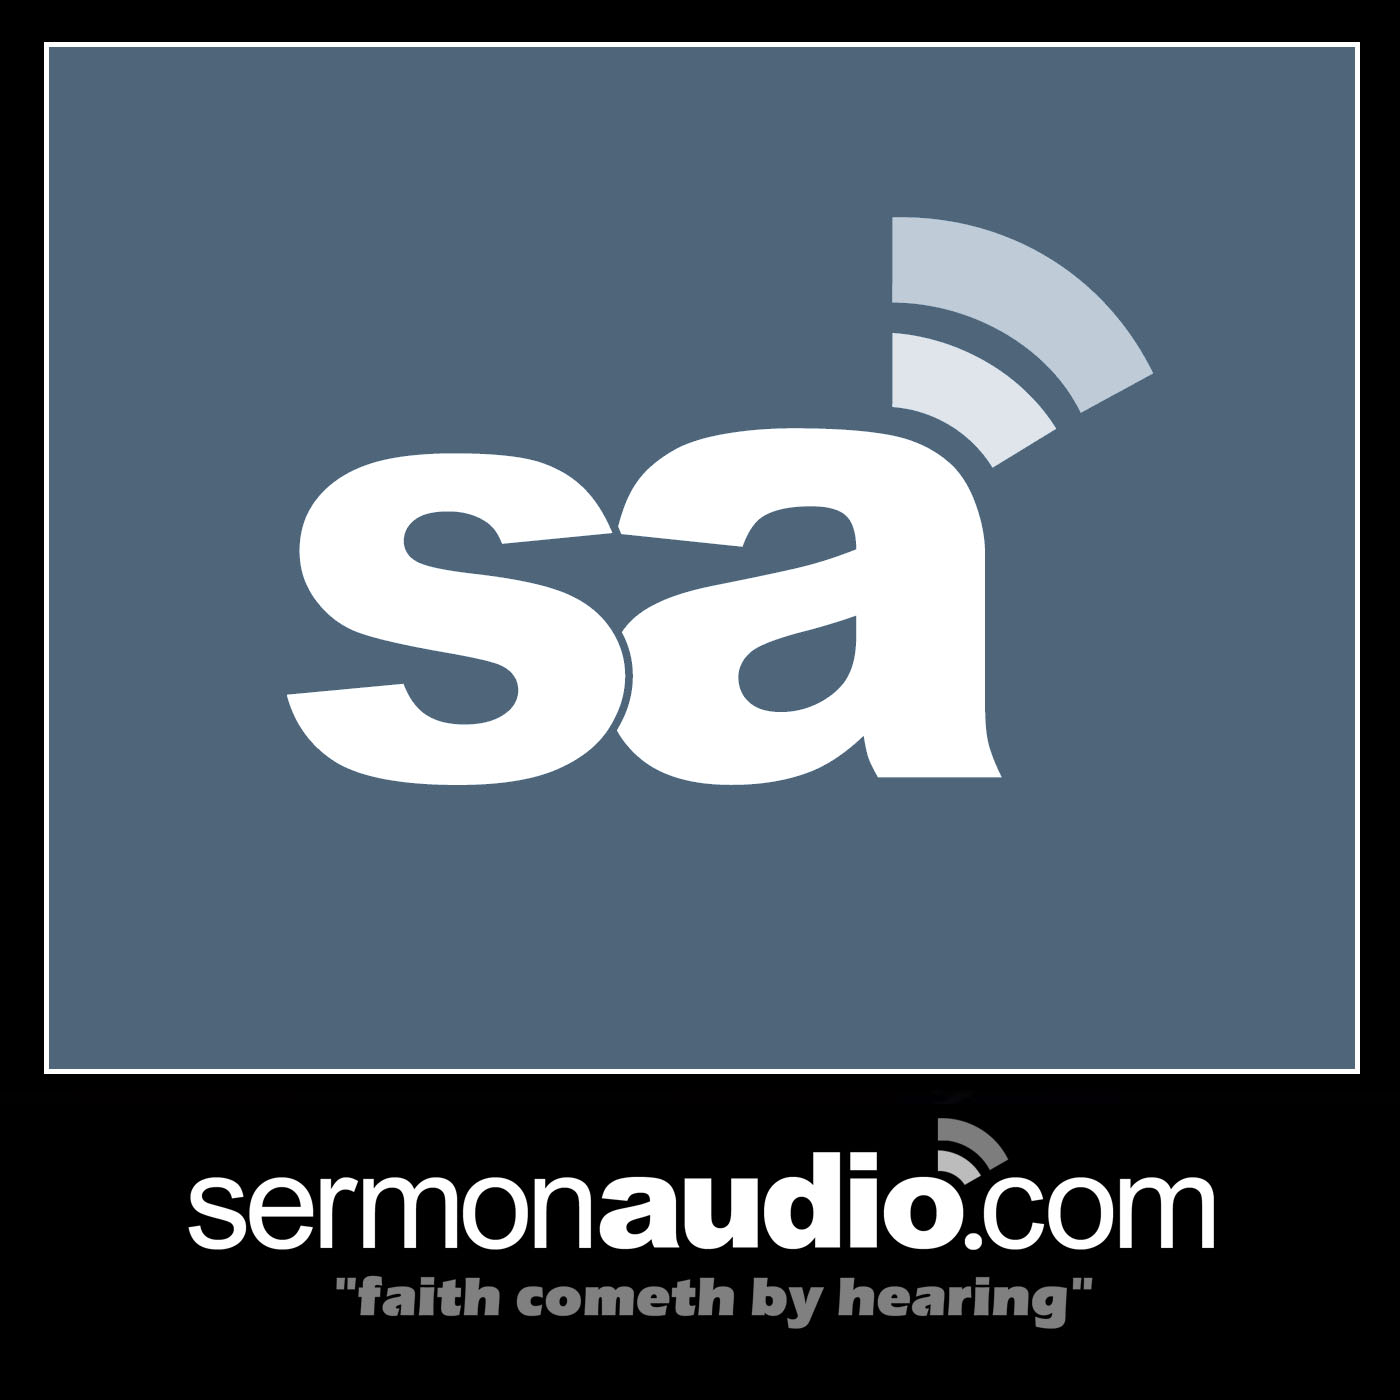 Fresh update on "ah" discussed on Evangelism on SermonAudio